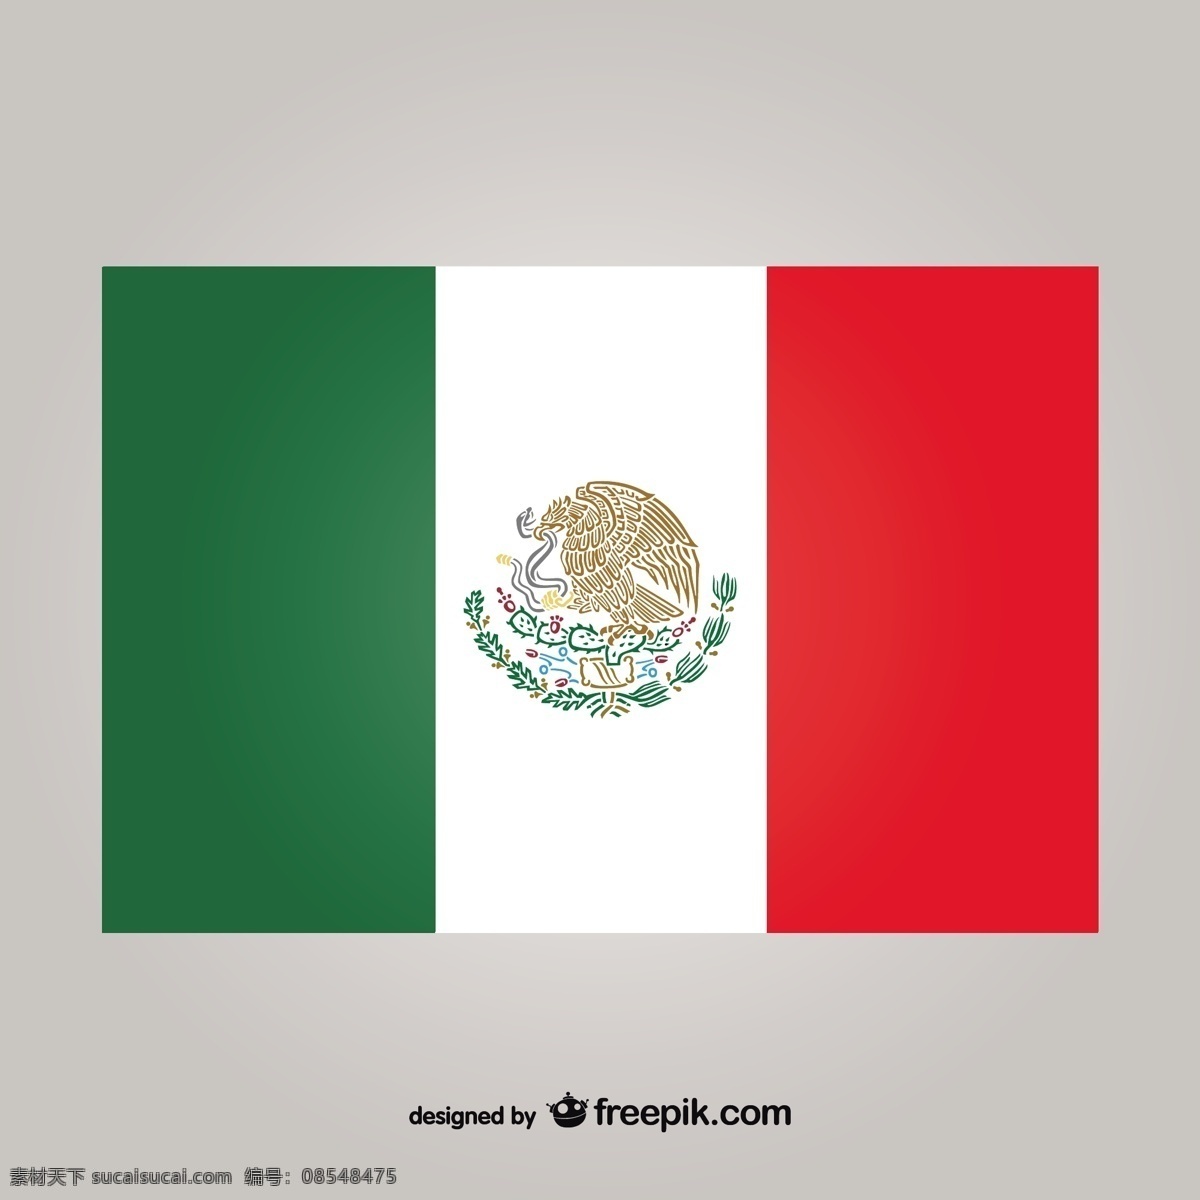 墨西哥 国旗 矢量 世界 旗帜 文化 美国 国旗矢量 世界国旗 墨西哥国旗 墨西哥文化 灰色